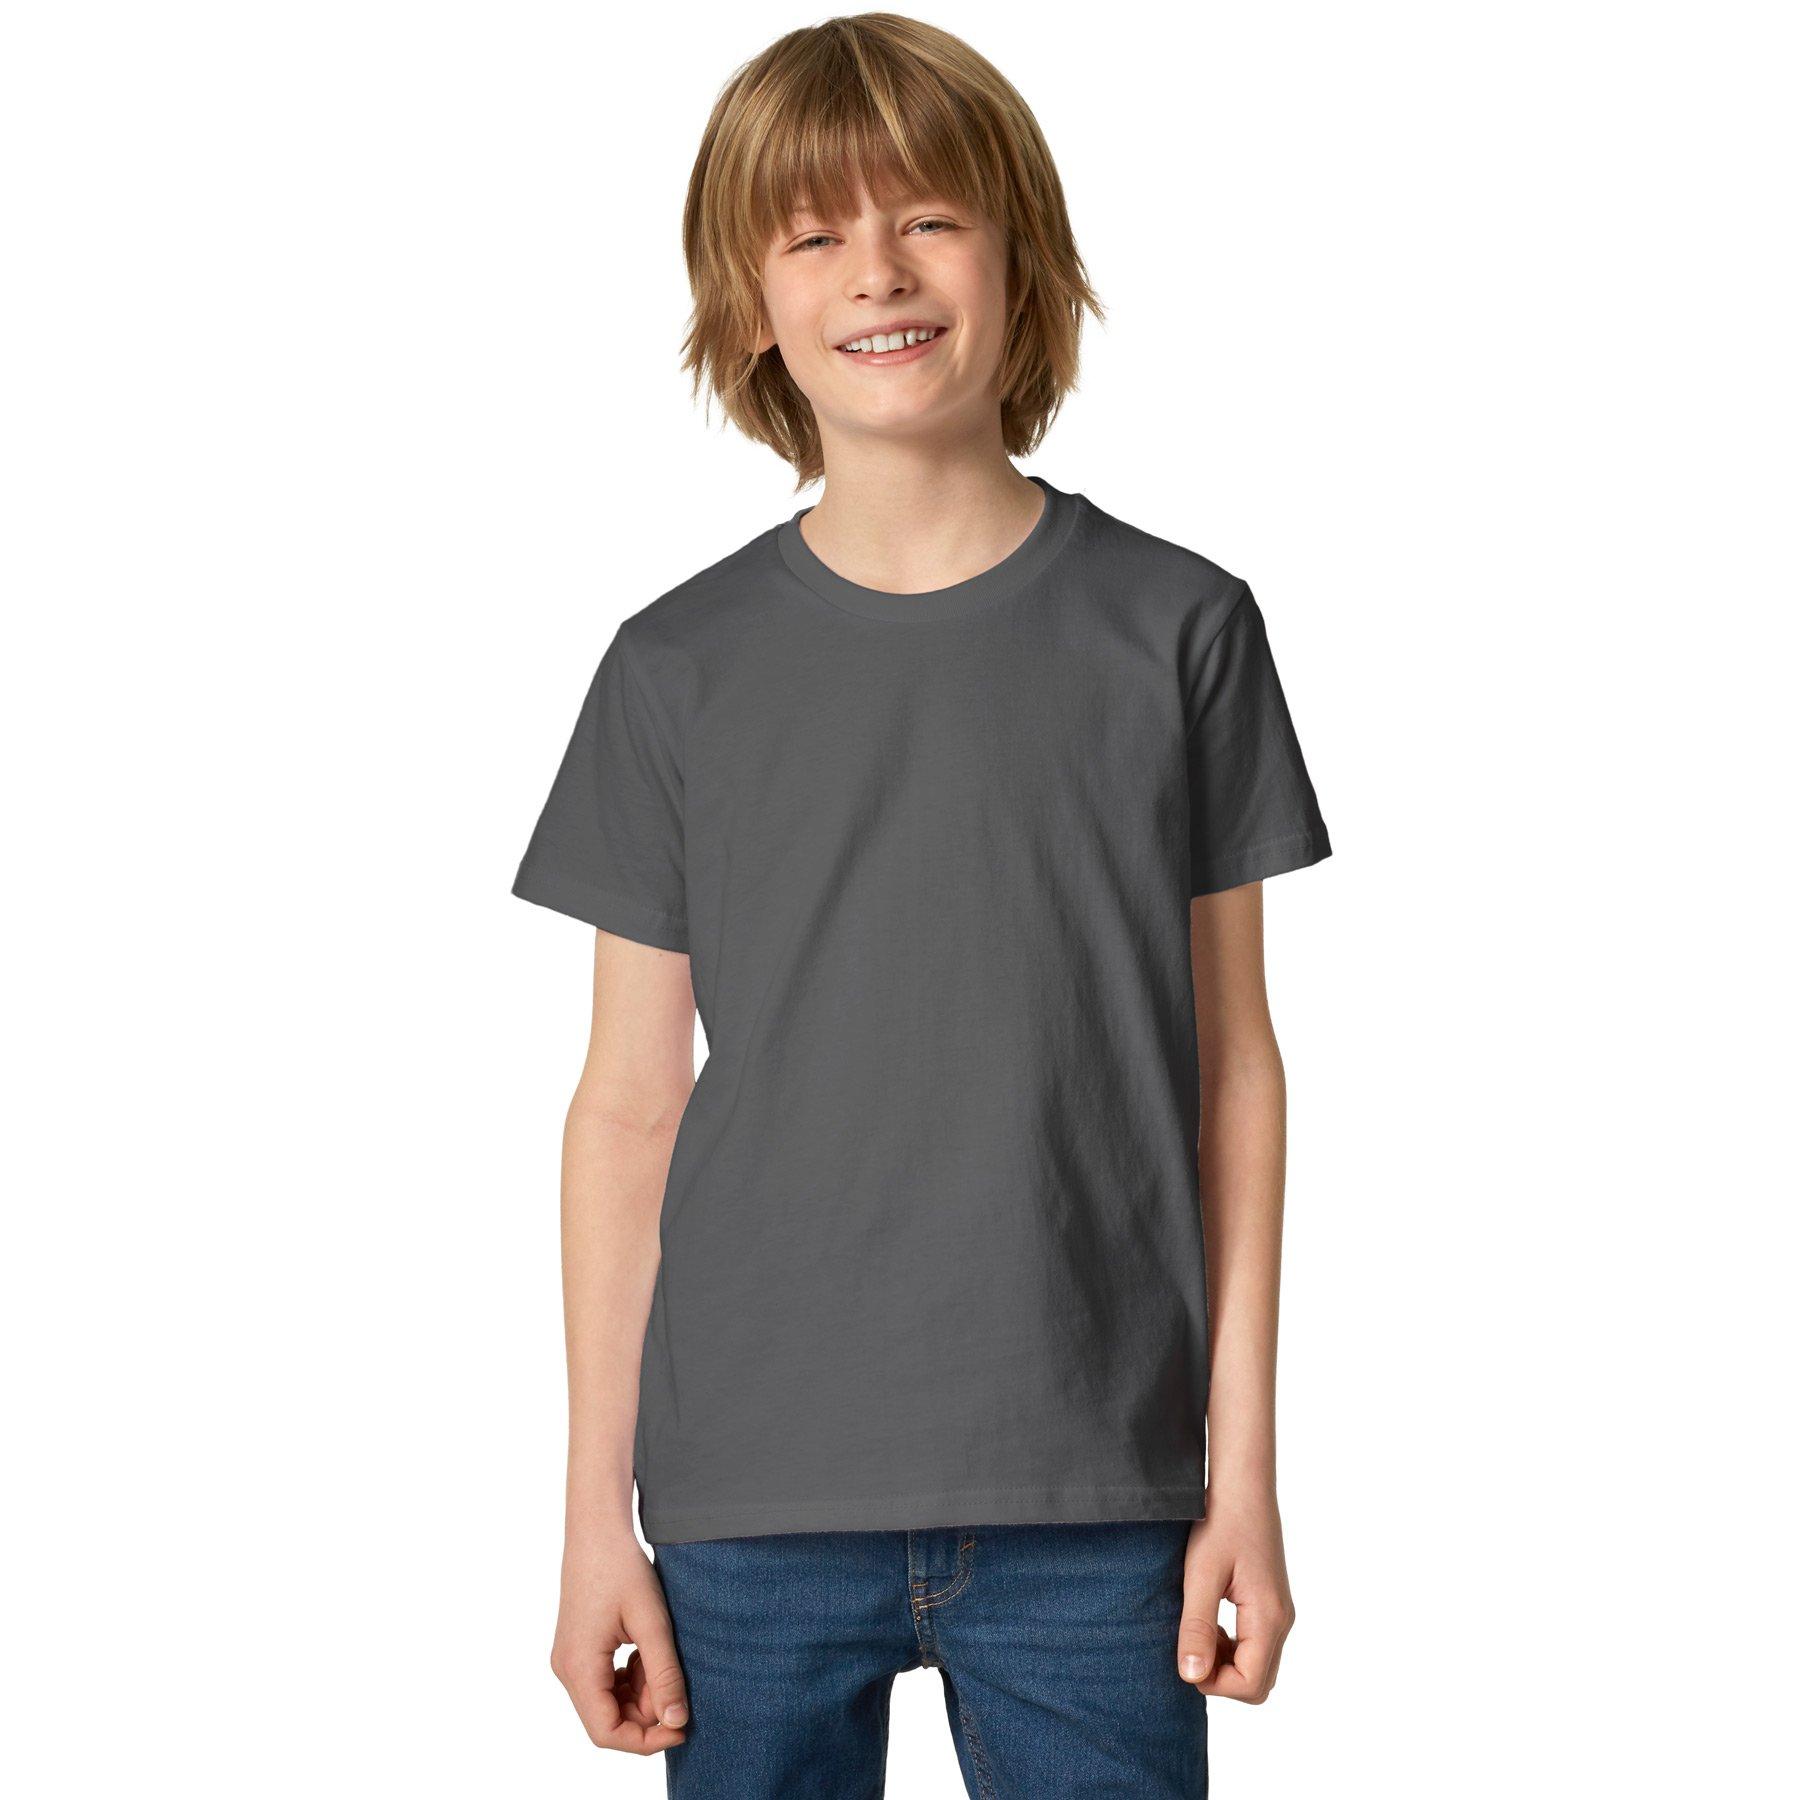 Tectake  T-shirt da bambino/a 